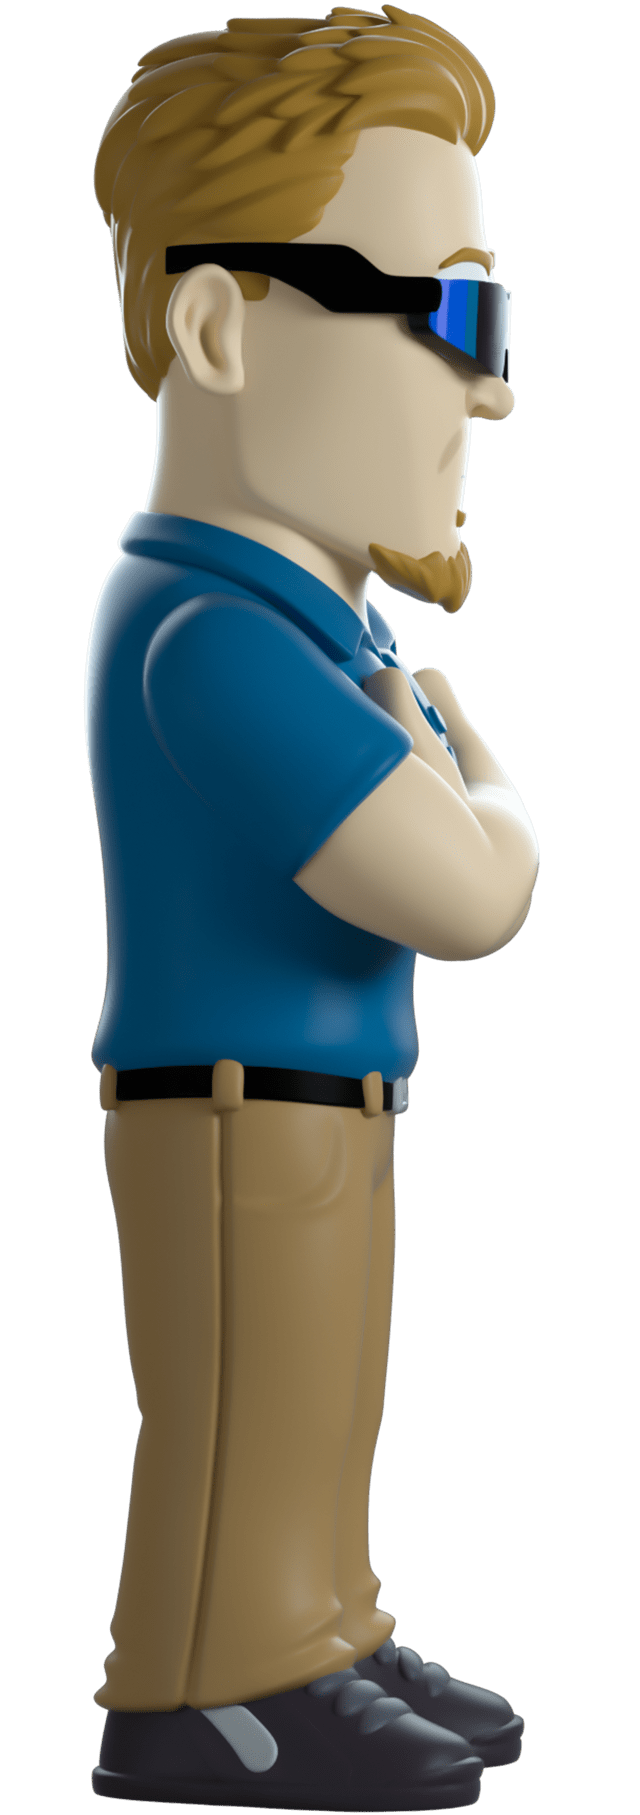 PC Principal South Park Youtooz Figurine - 2